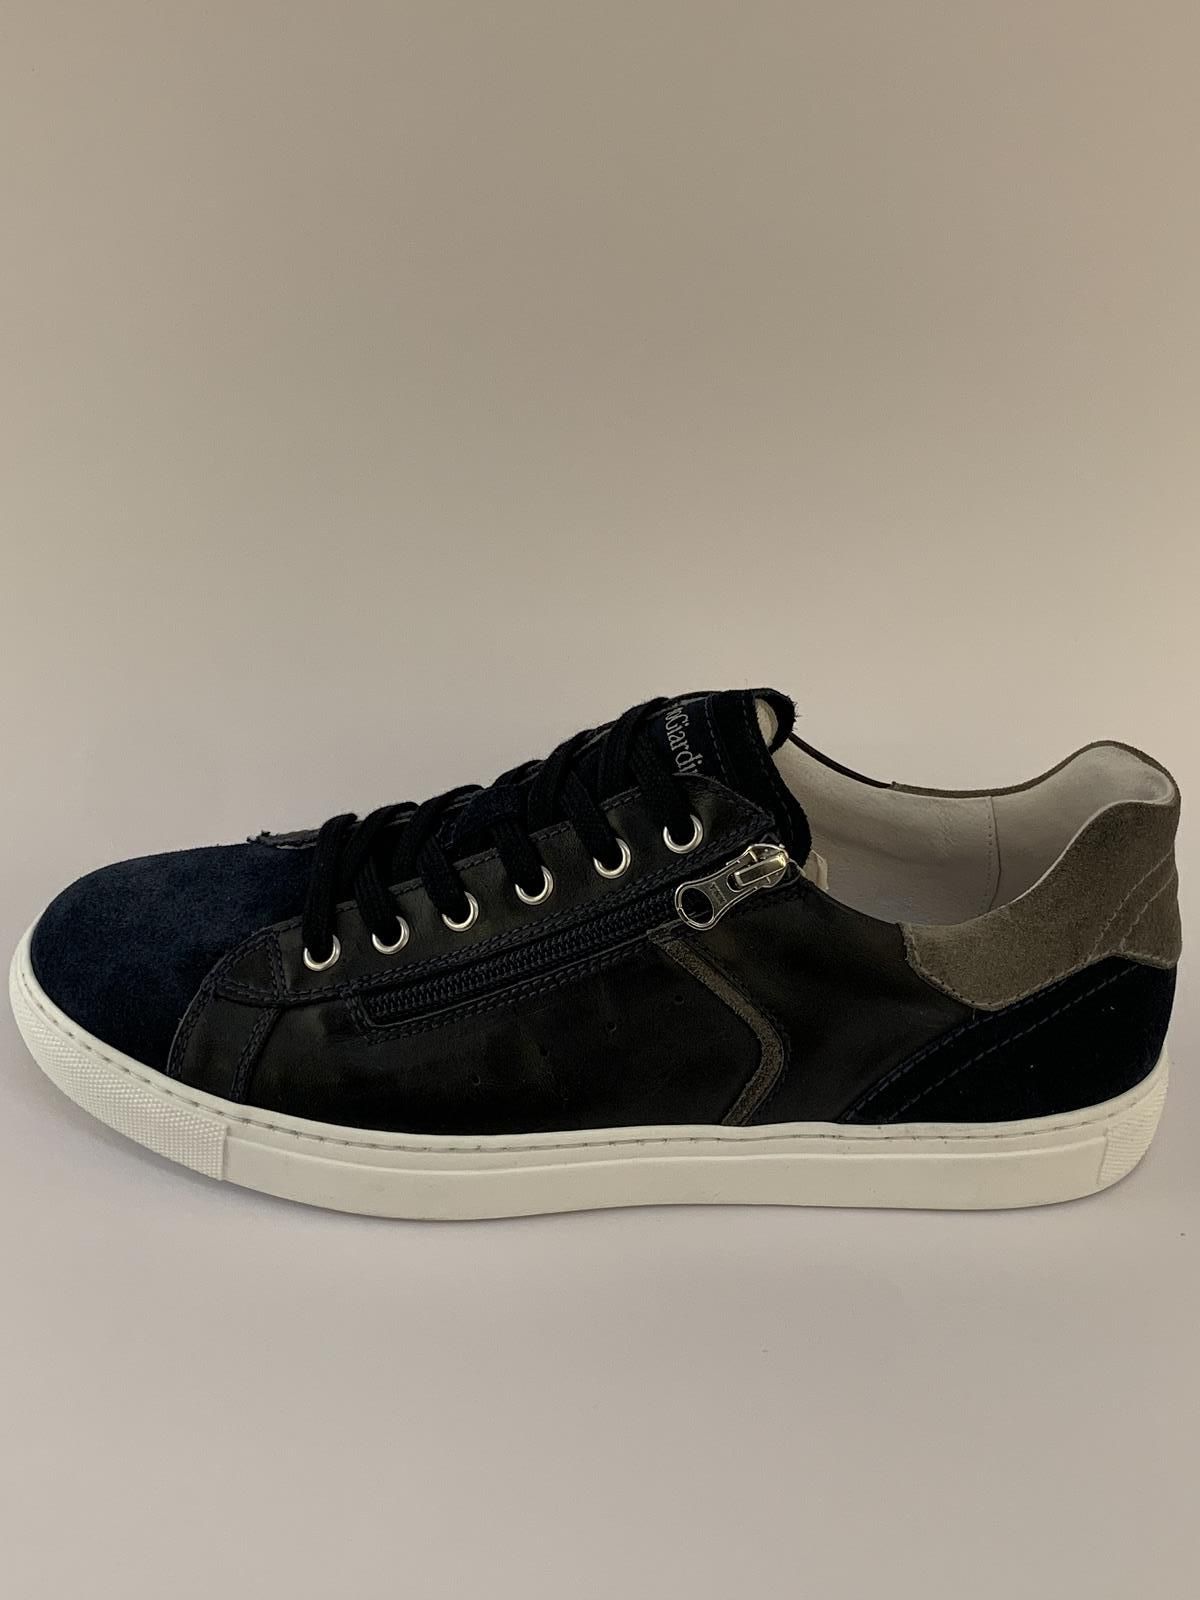 Nero Giardini Sneaker Blauw+kleur heren (Trainer Rits Sober - 2380) - Schoenen Luca